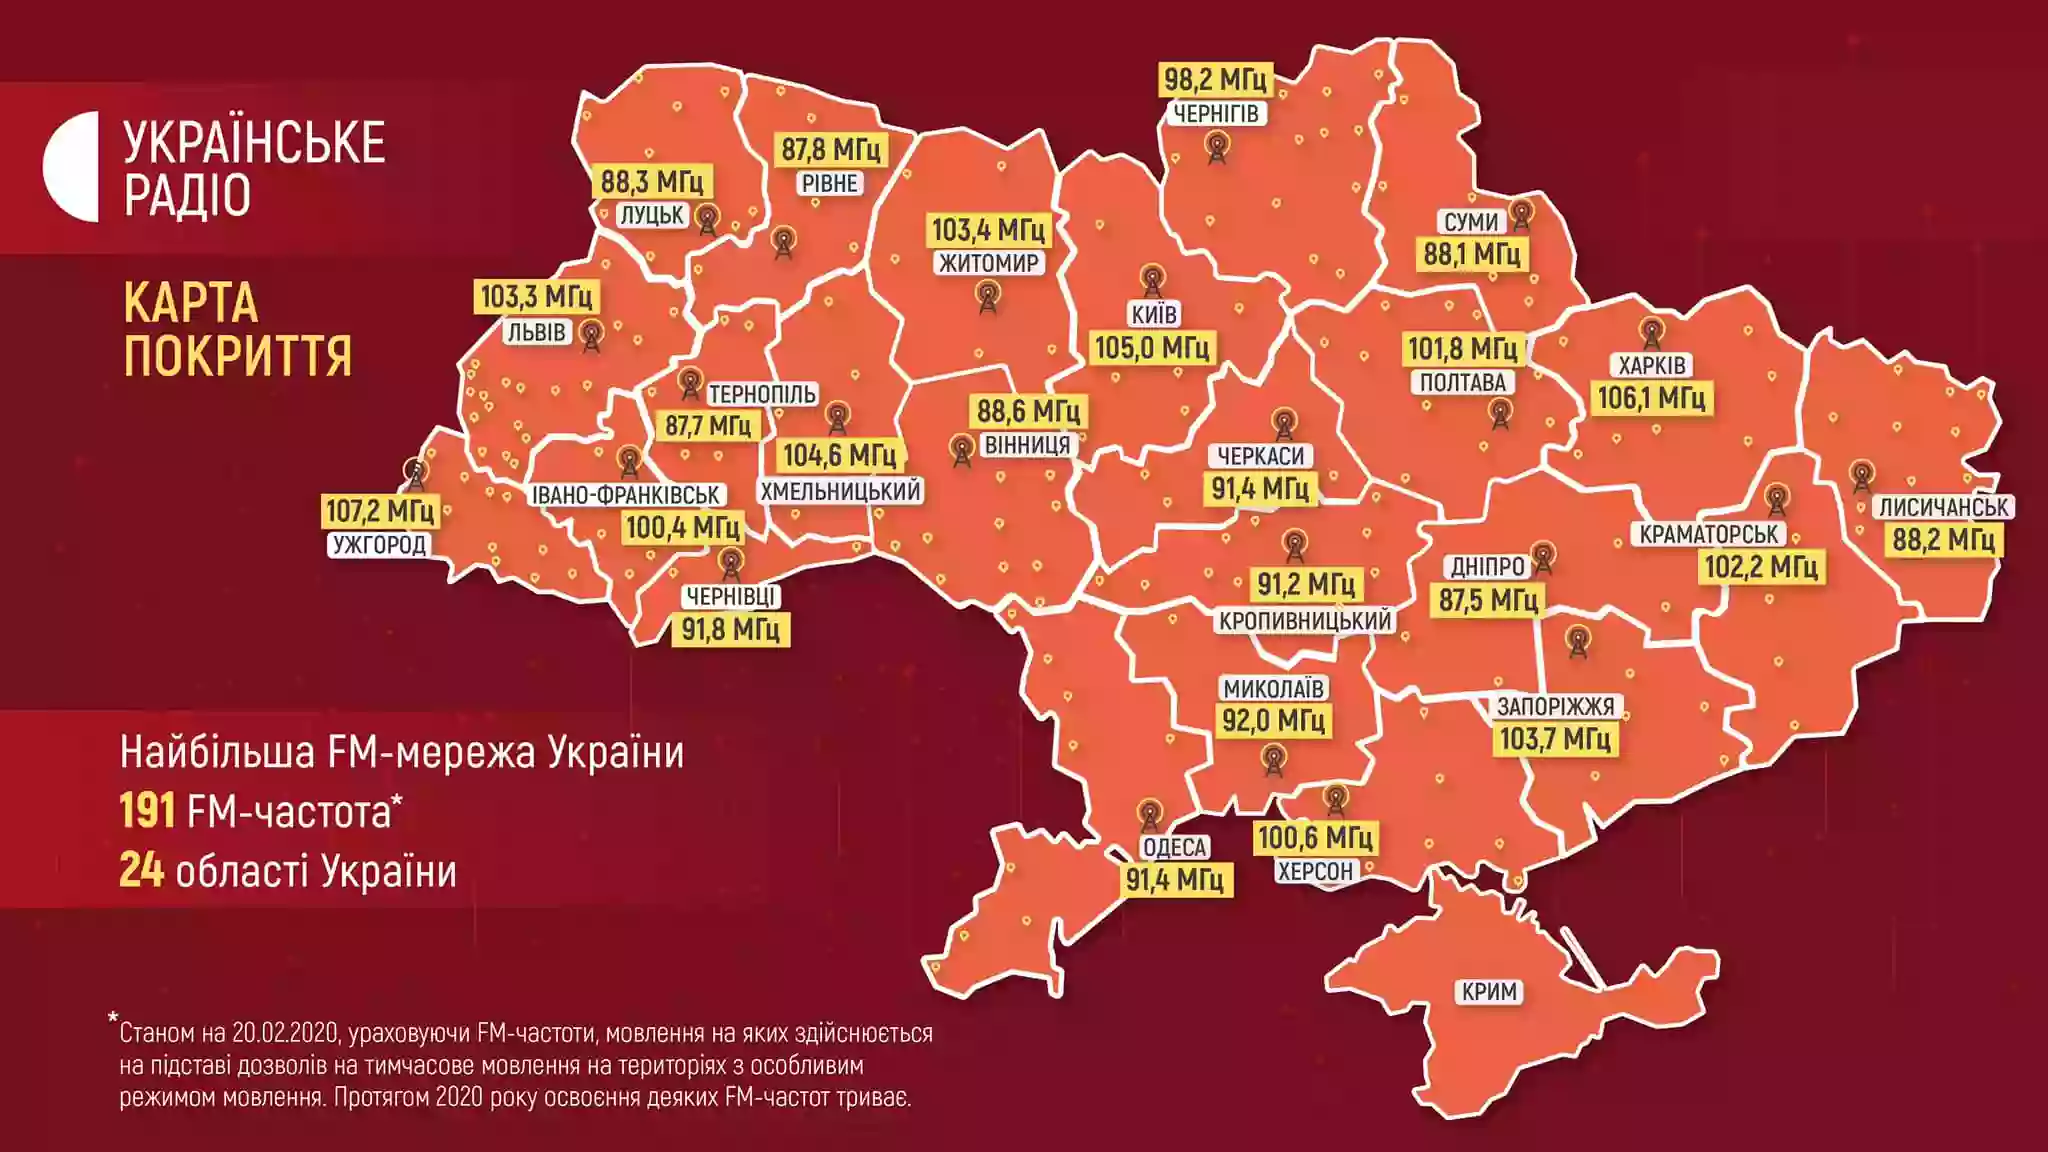 «Українське радіо» ділиться своїм сигналом для ретрансляції з усіма радіостанціями України